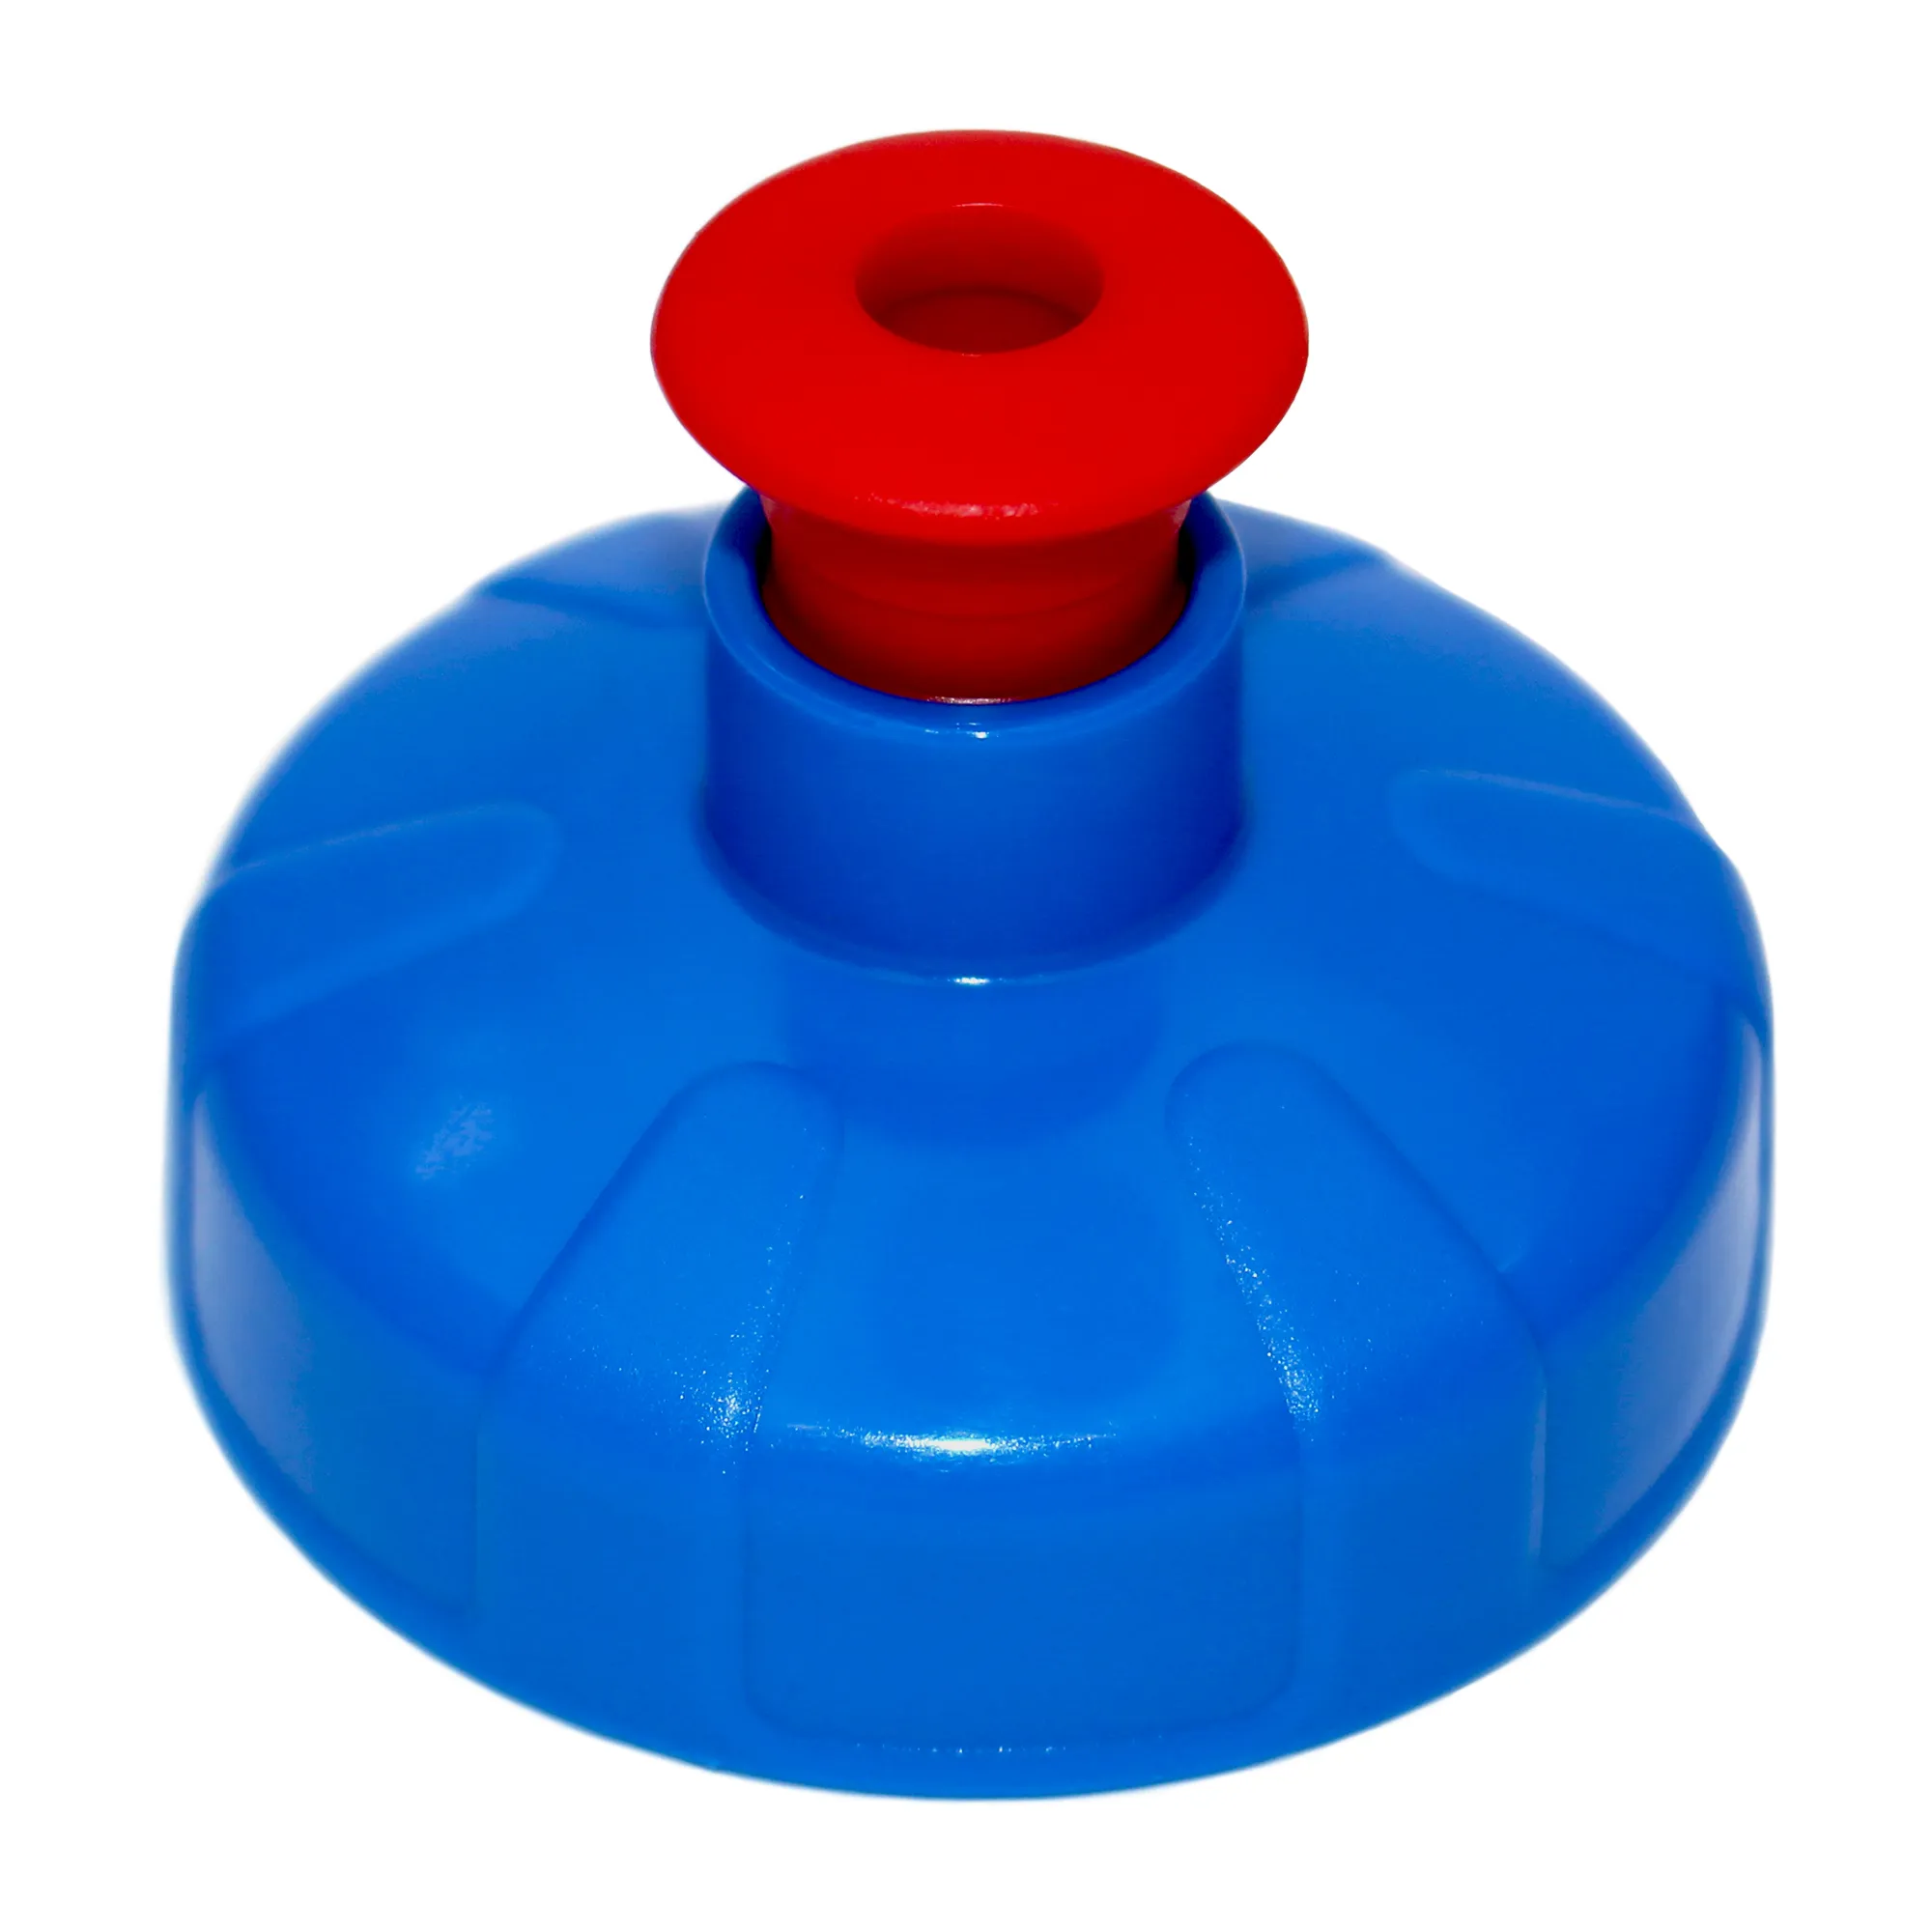 Zu sehen ist ein blau roter Push Pull Sport Deckel für die Acala Tritan Trinkflaschen Grip und 8 Kant vor weißem Hintergrund. Der Deckel ist blau und der kleine Verschluss, der nach oben gezogen wird ist rot und geöffnet.